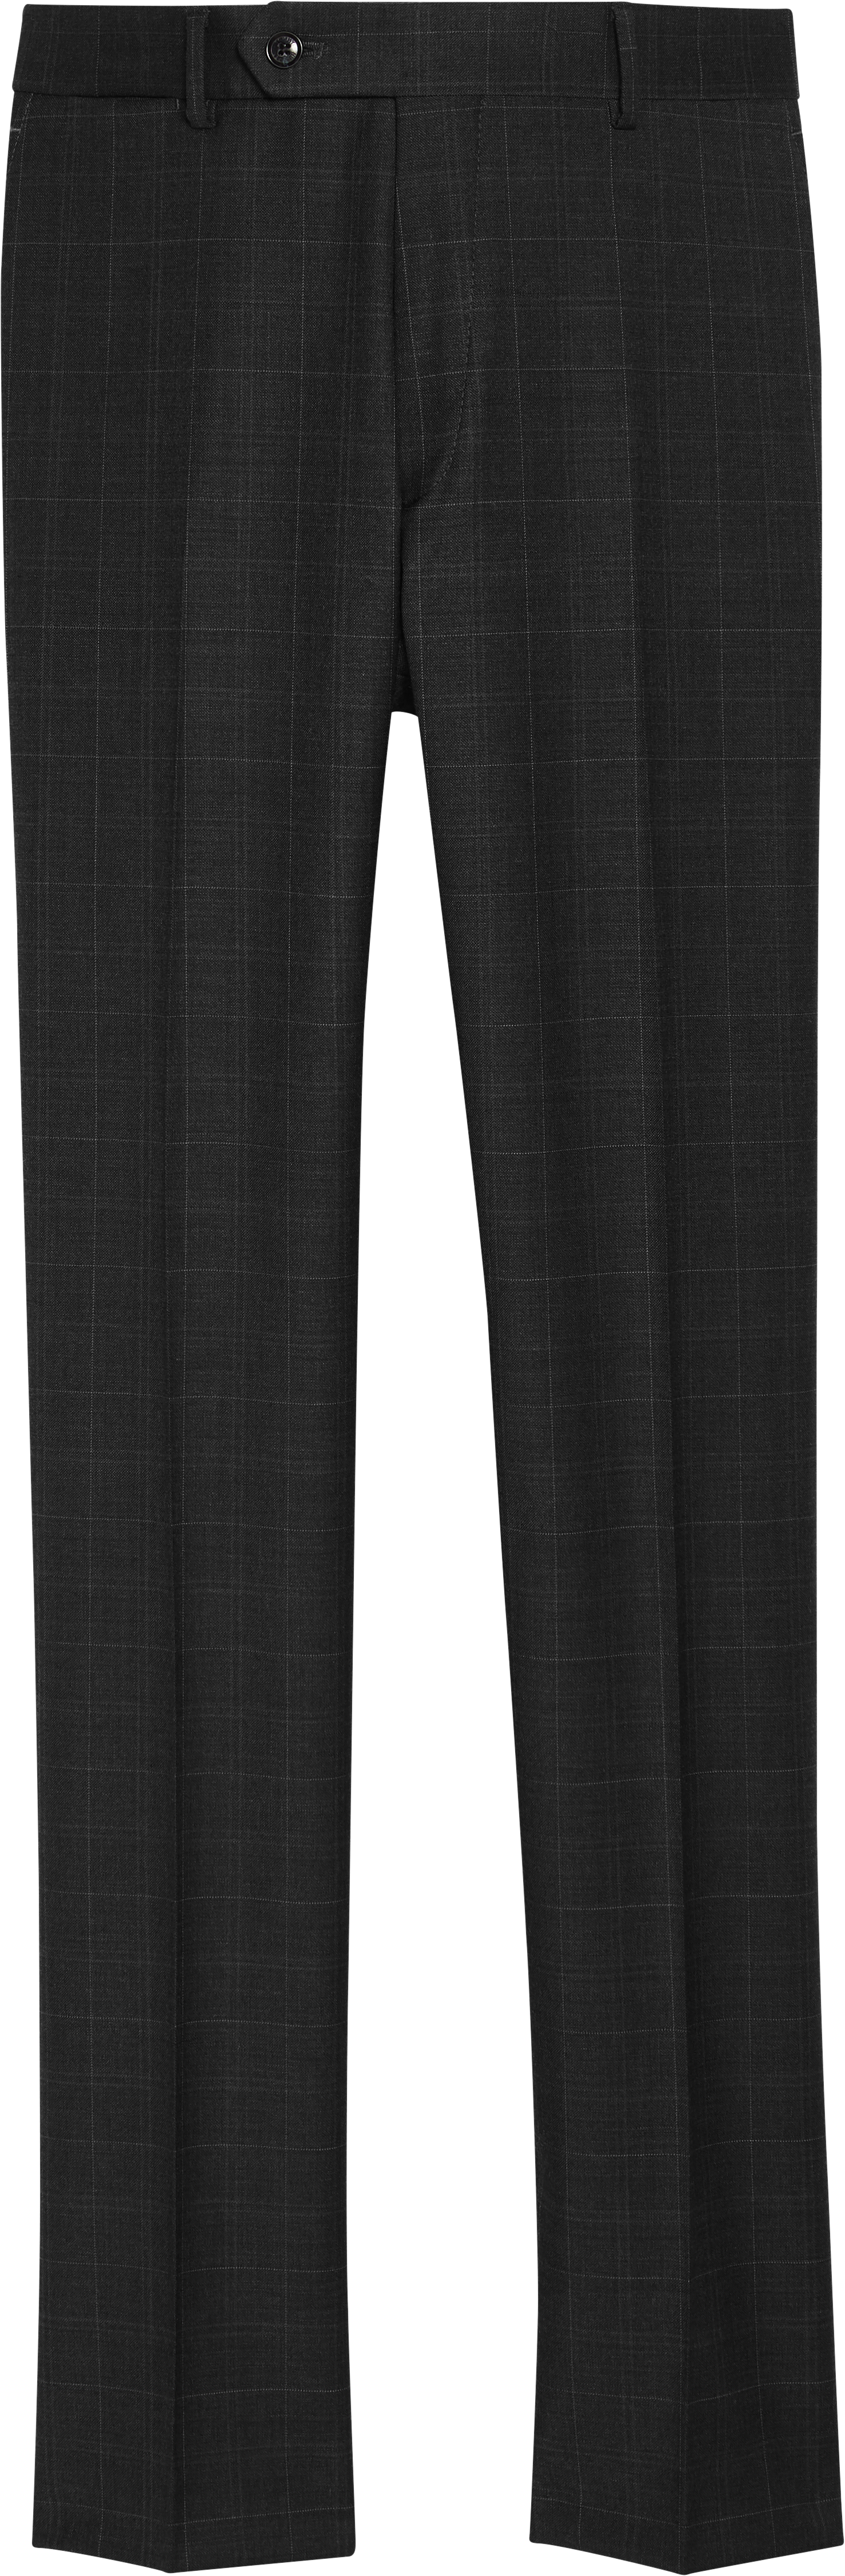 Tommy Hilfiger Modern Fit Suit Separate Pants | Pants| Men\'s Wearhouse